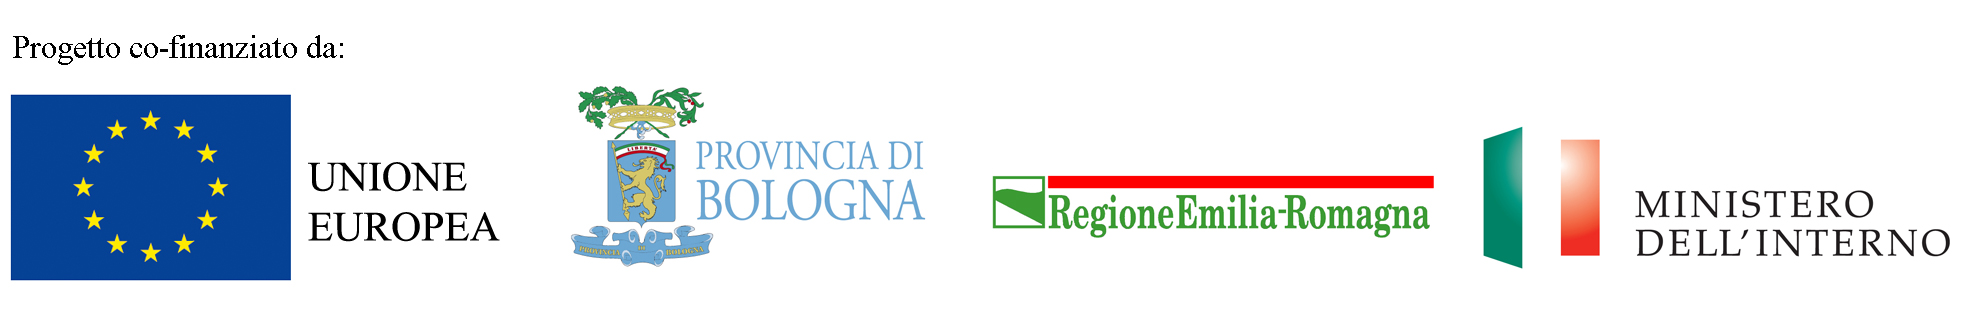 Loghi: Unione Europea, Provincia di Bologna, Regione Emilia-Romagna, Ministero dell'Interno